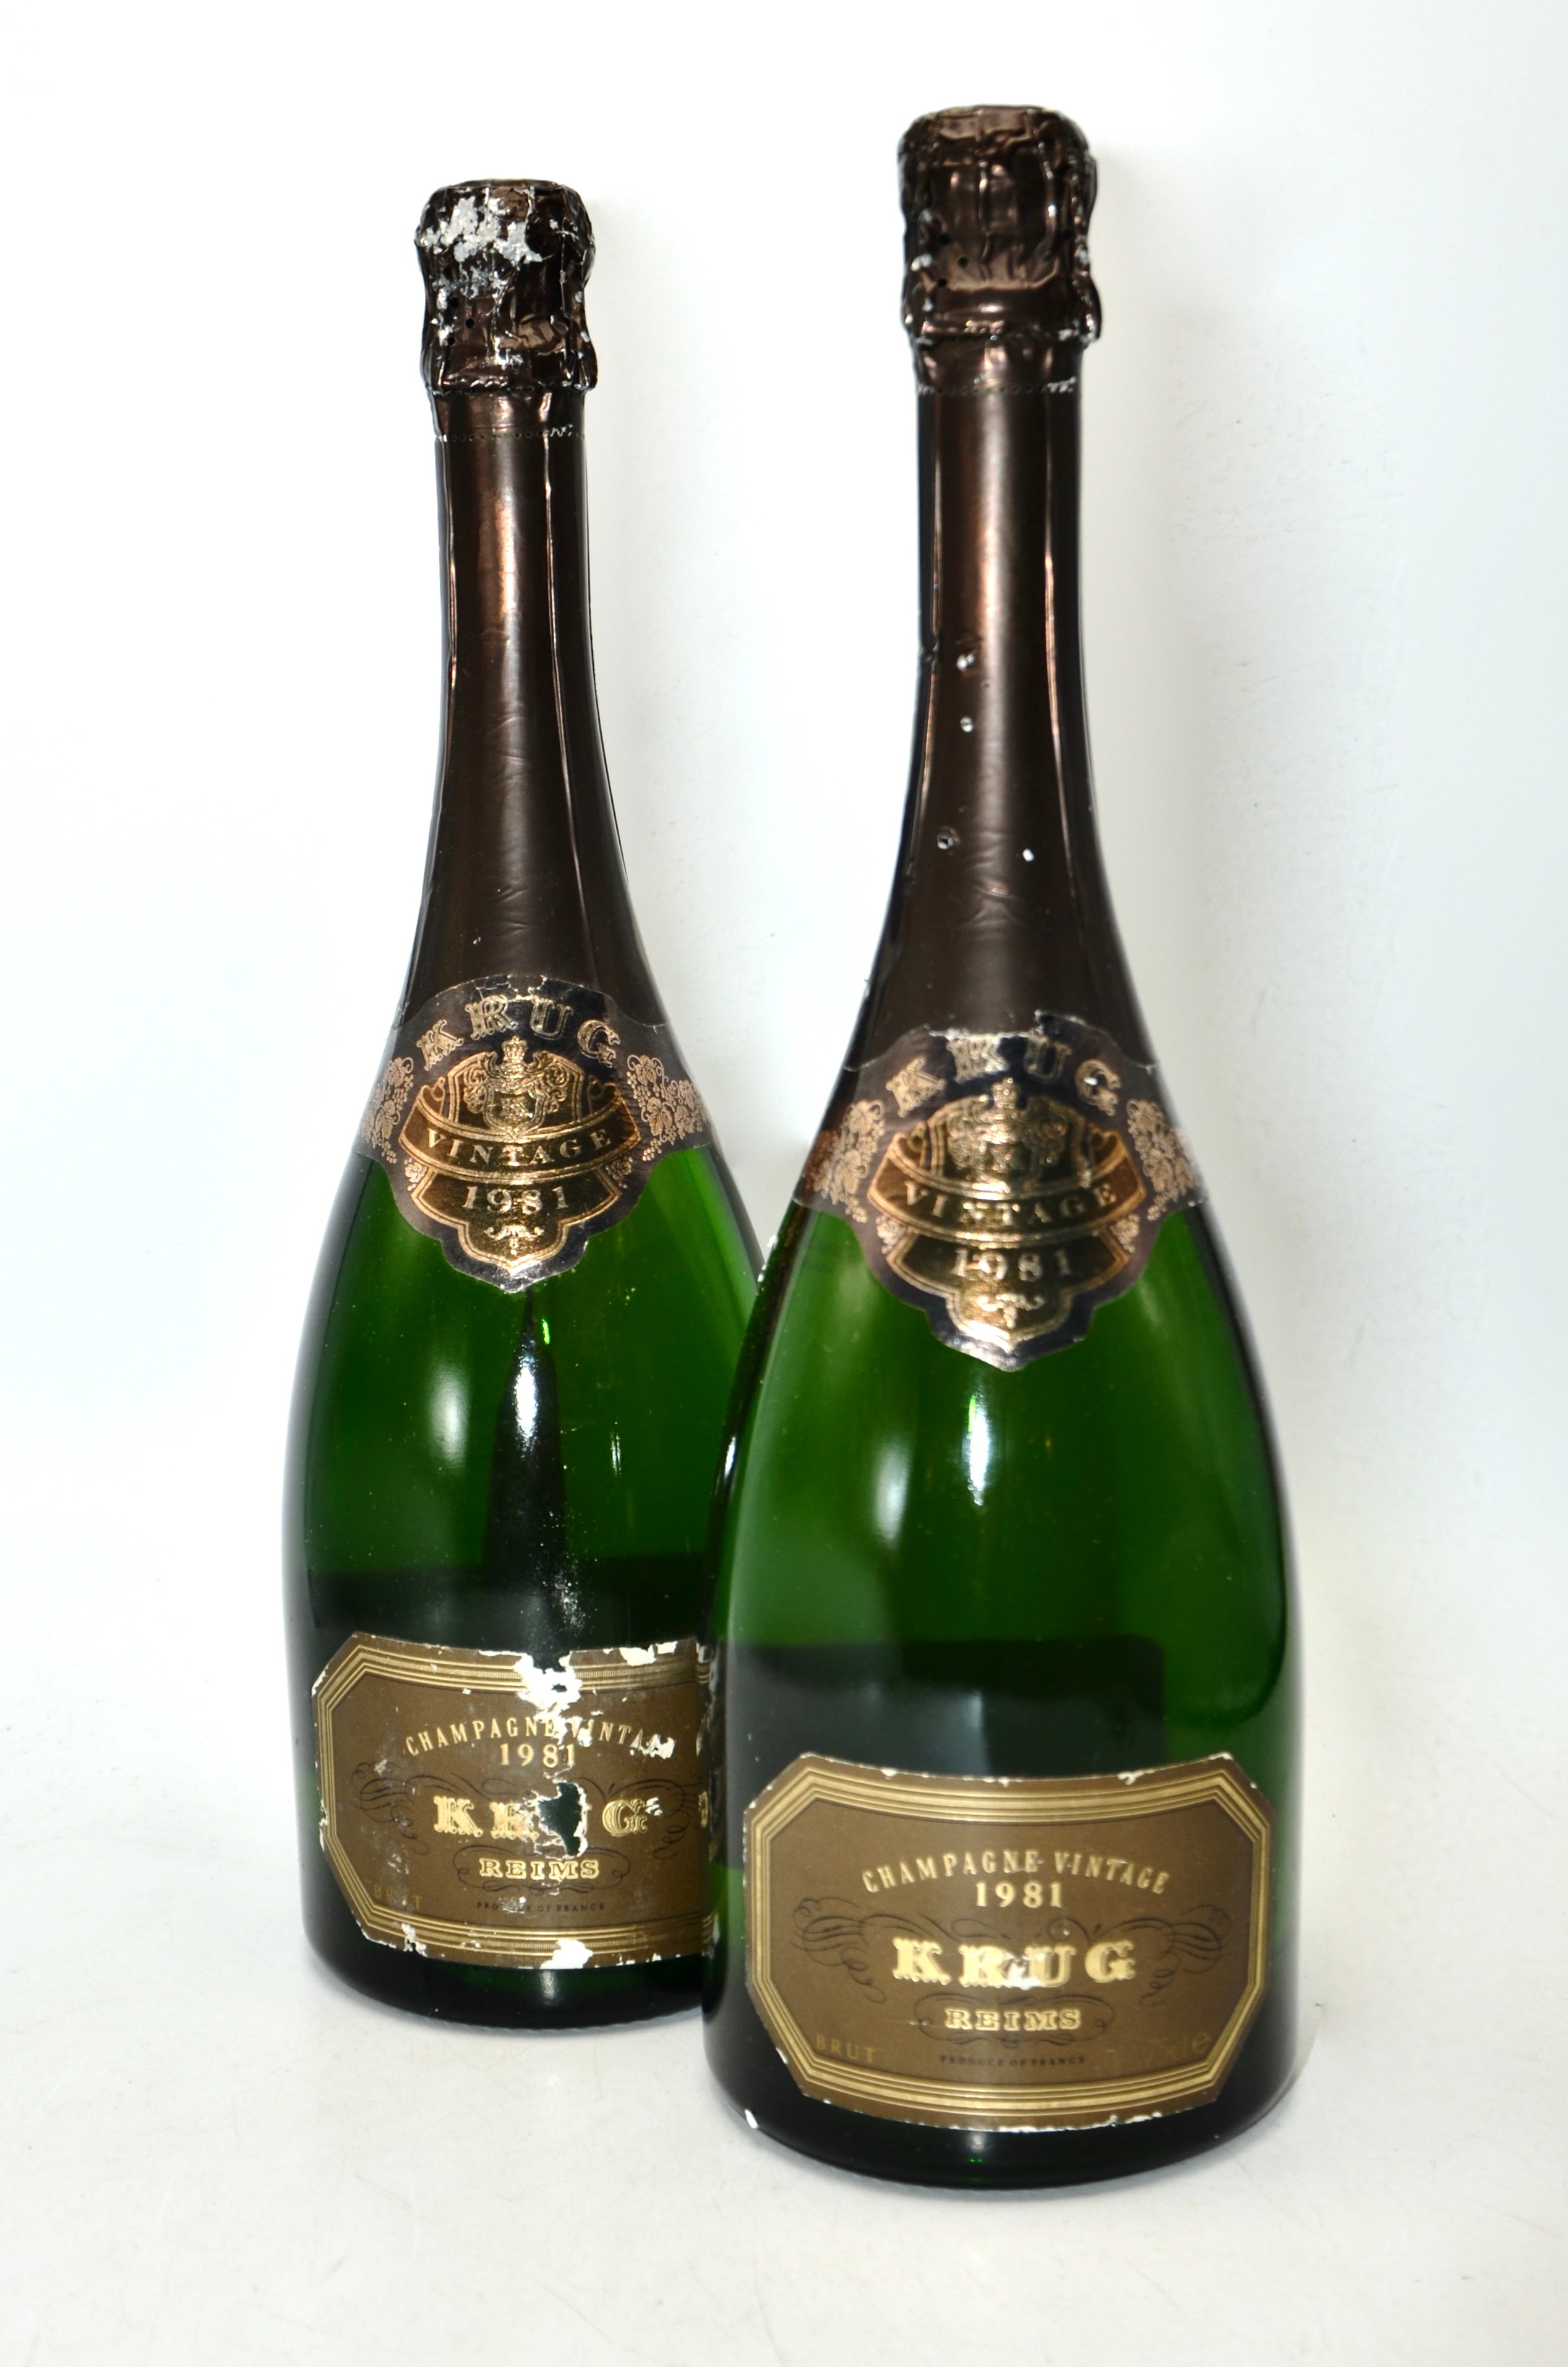 Krug Vintage Champagne